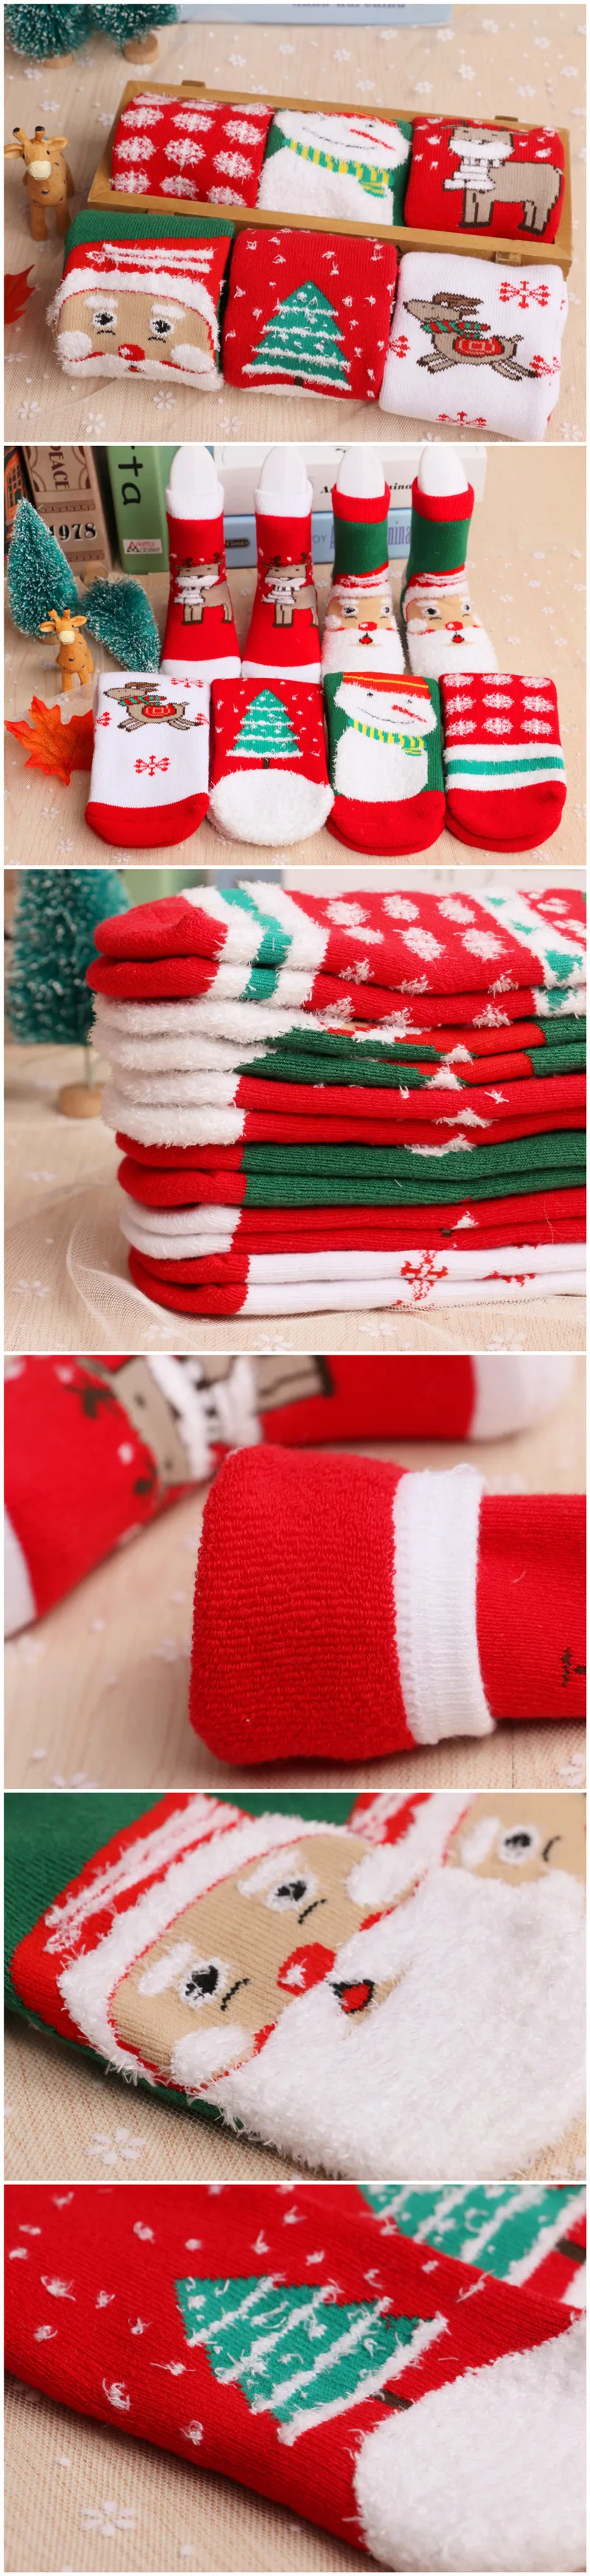 [Bosudhsou.] C41# Рождественская тематическая одежда для детей хлопковые жаккардовые носки из махровой ткани рождественские носки для малышей впитывающие пот носки